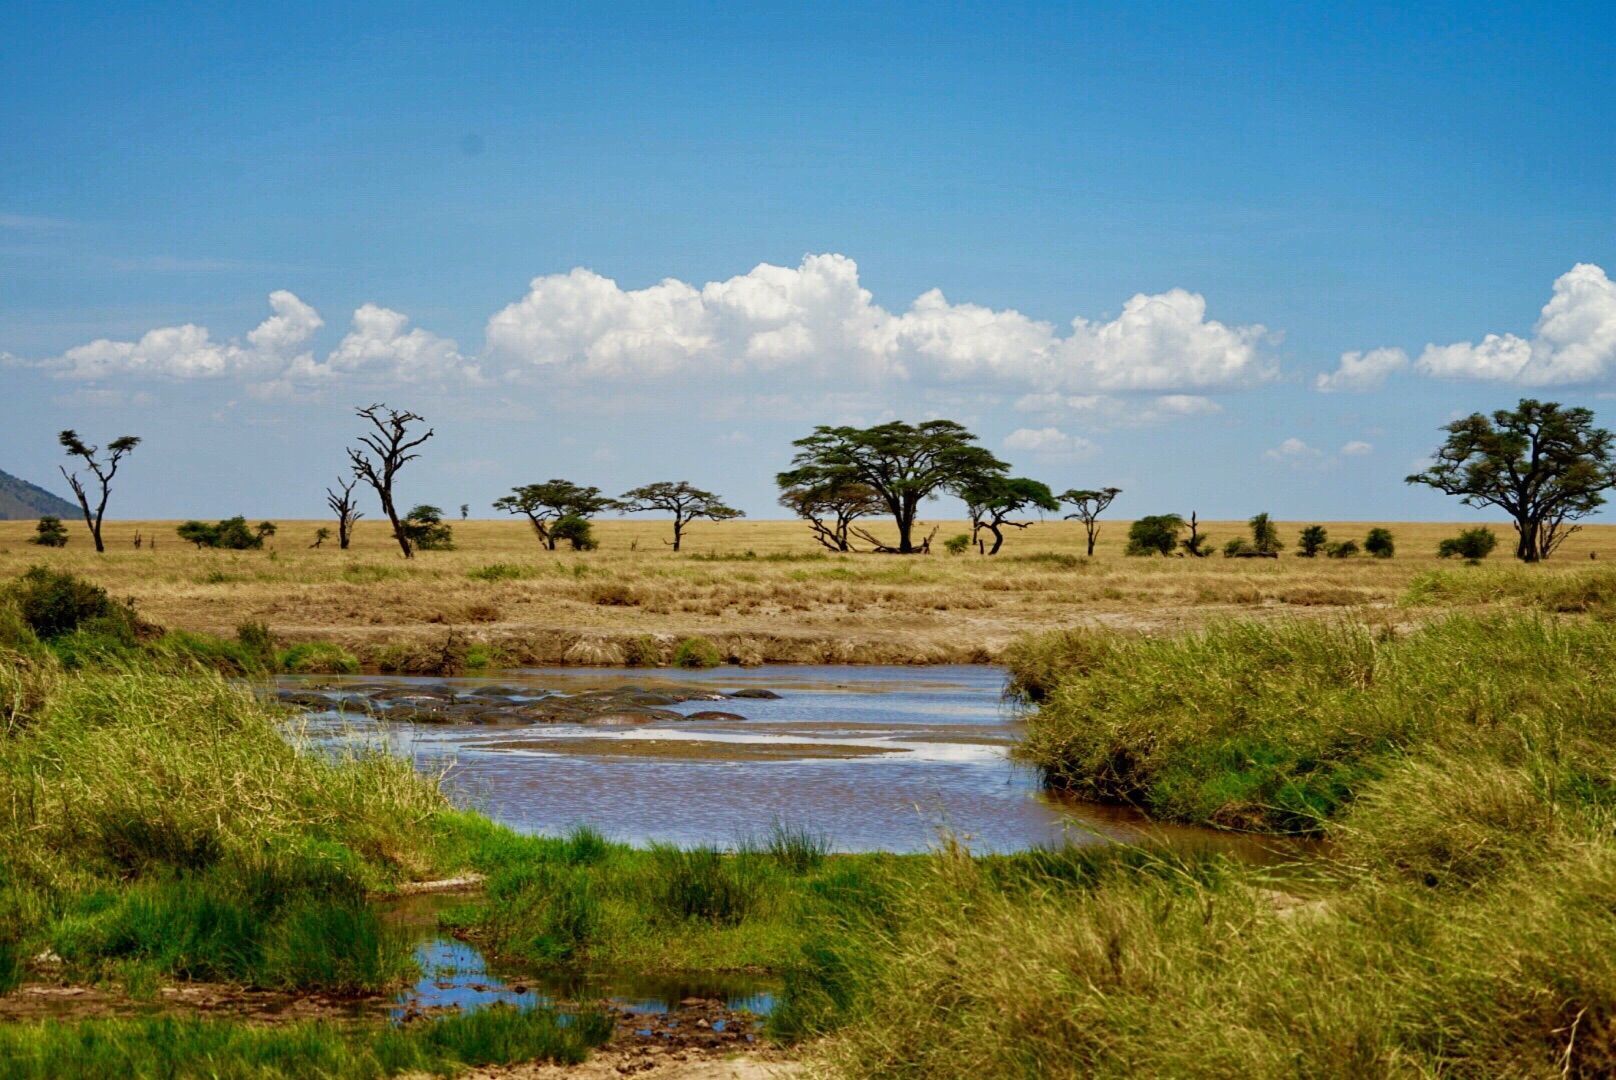 充满着非洲大草原的旷野之美,是一个超大的野生动物园,绝对值